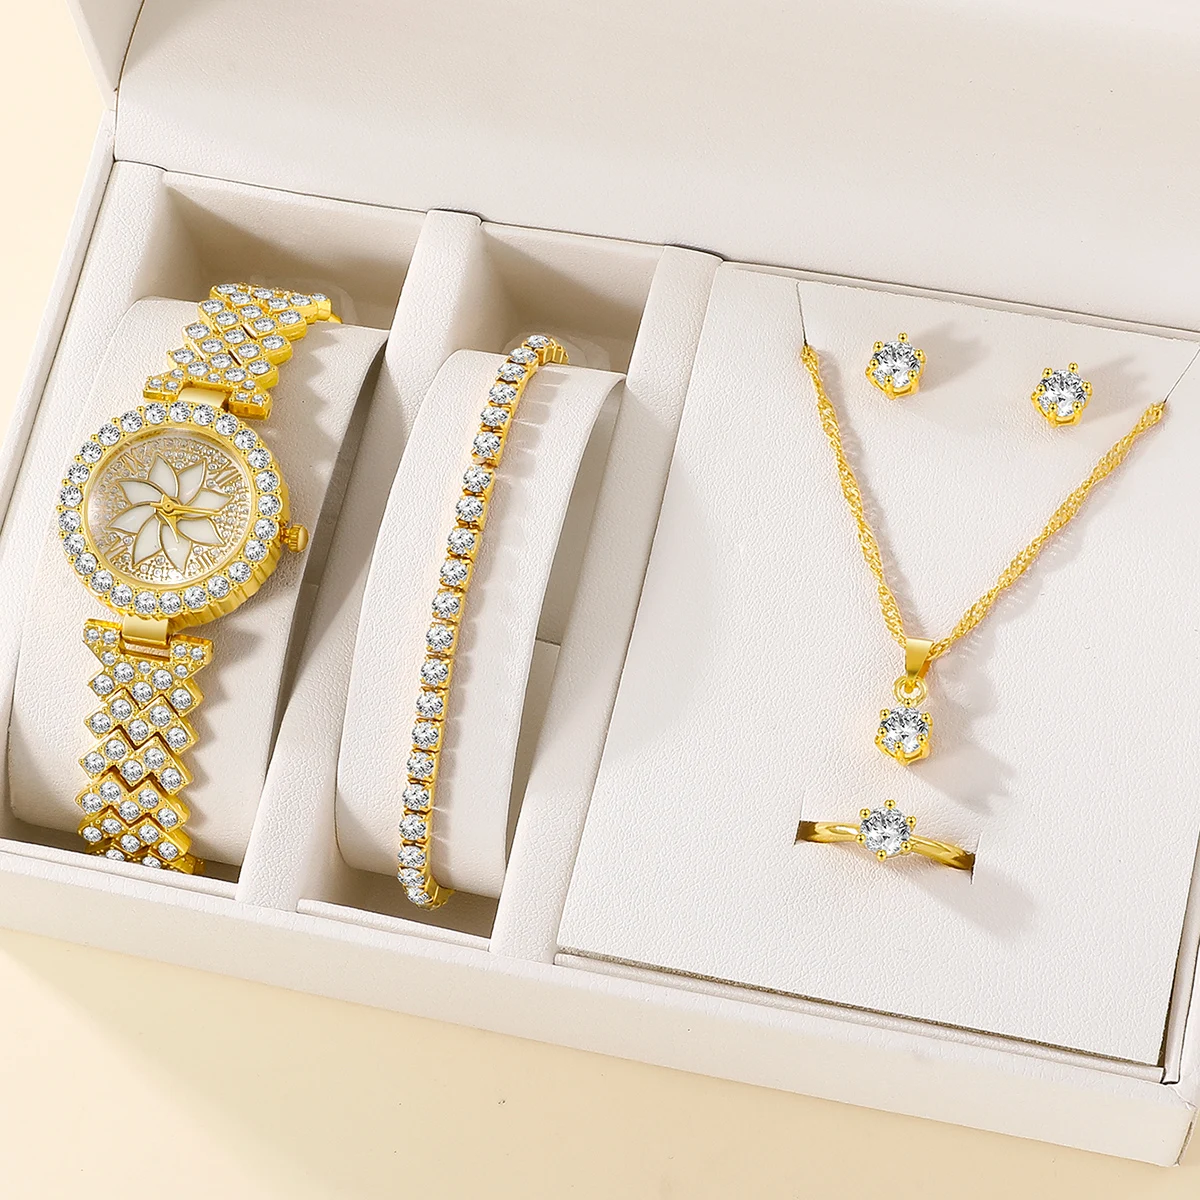 Высококачественные Женские кварцевые часы со стальным браслетом, роскошные золотые часы, браслет с бриллиантами, серьги, кольцо, ожерелье, набор [без коробки]